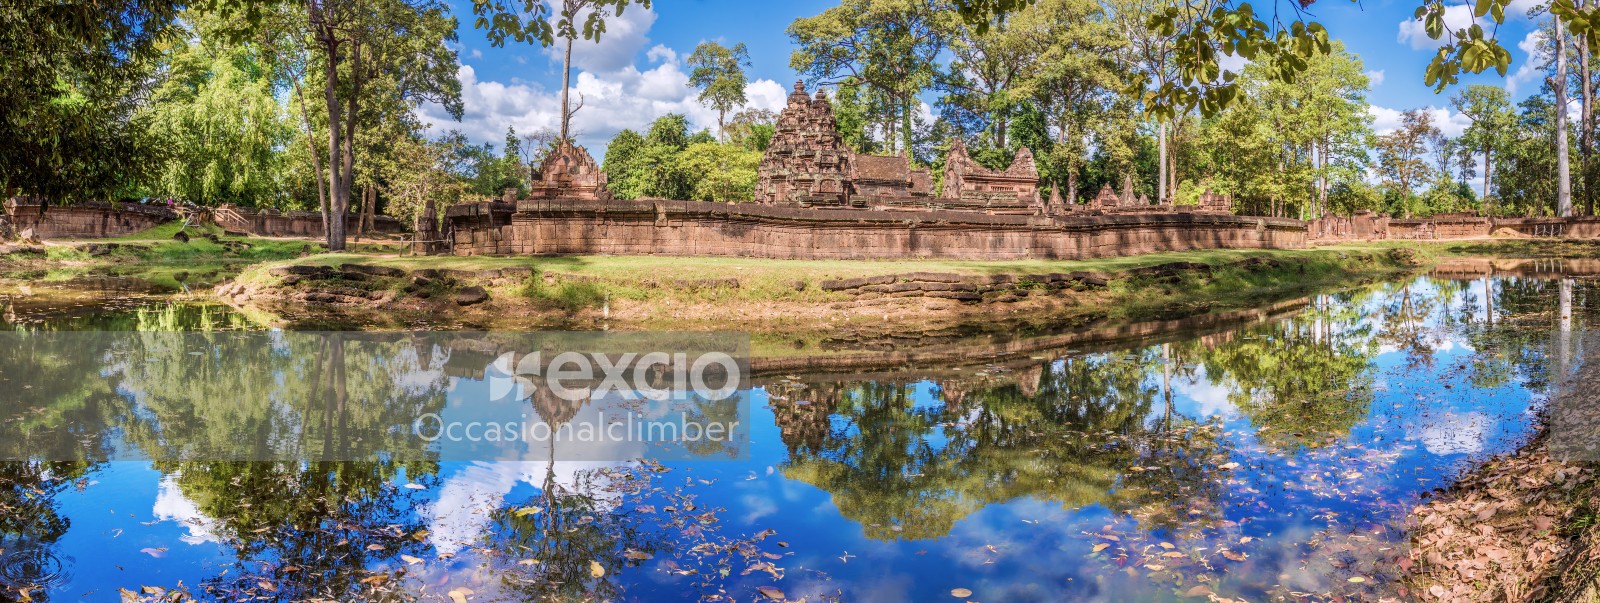 Banteay Srei, Cambodia